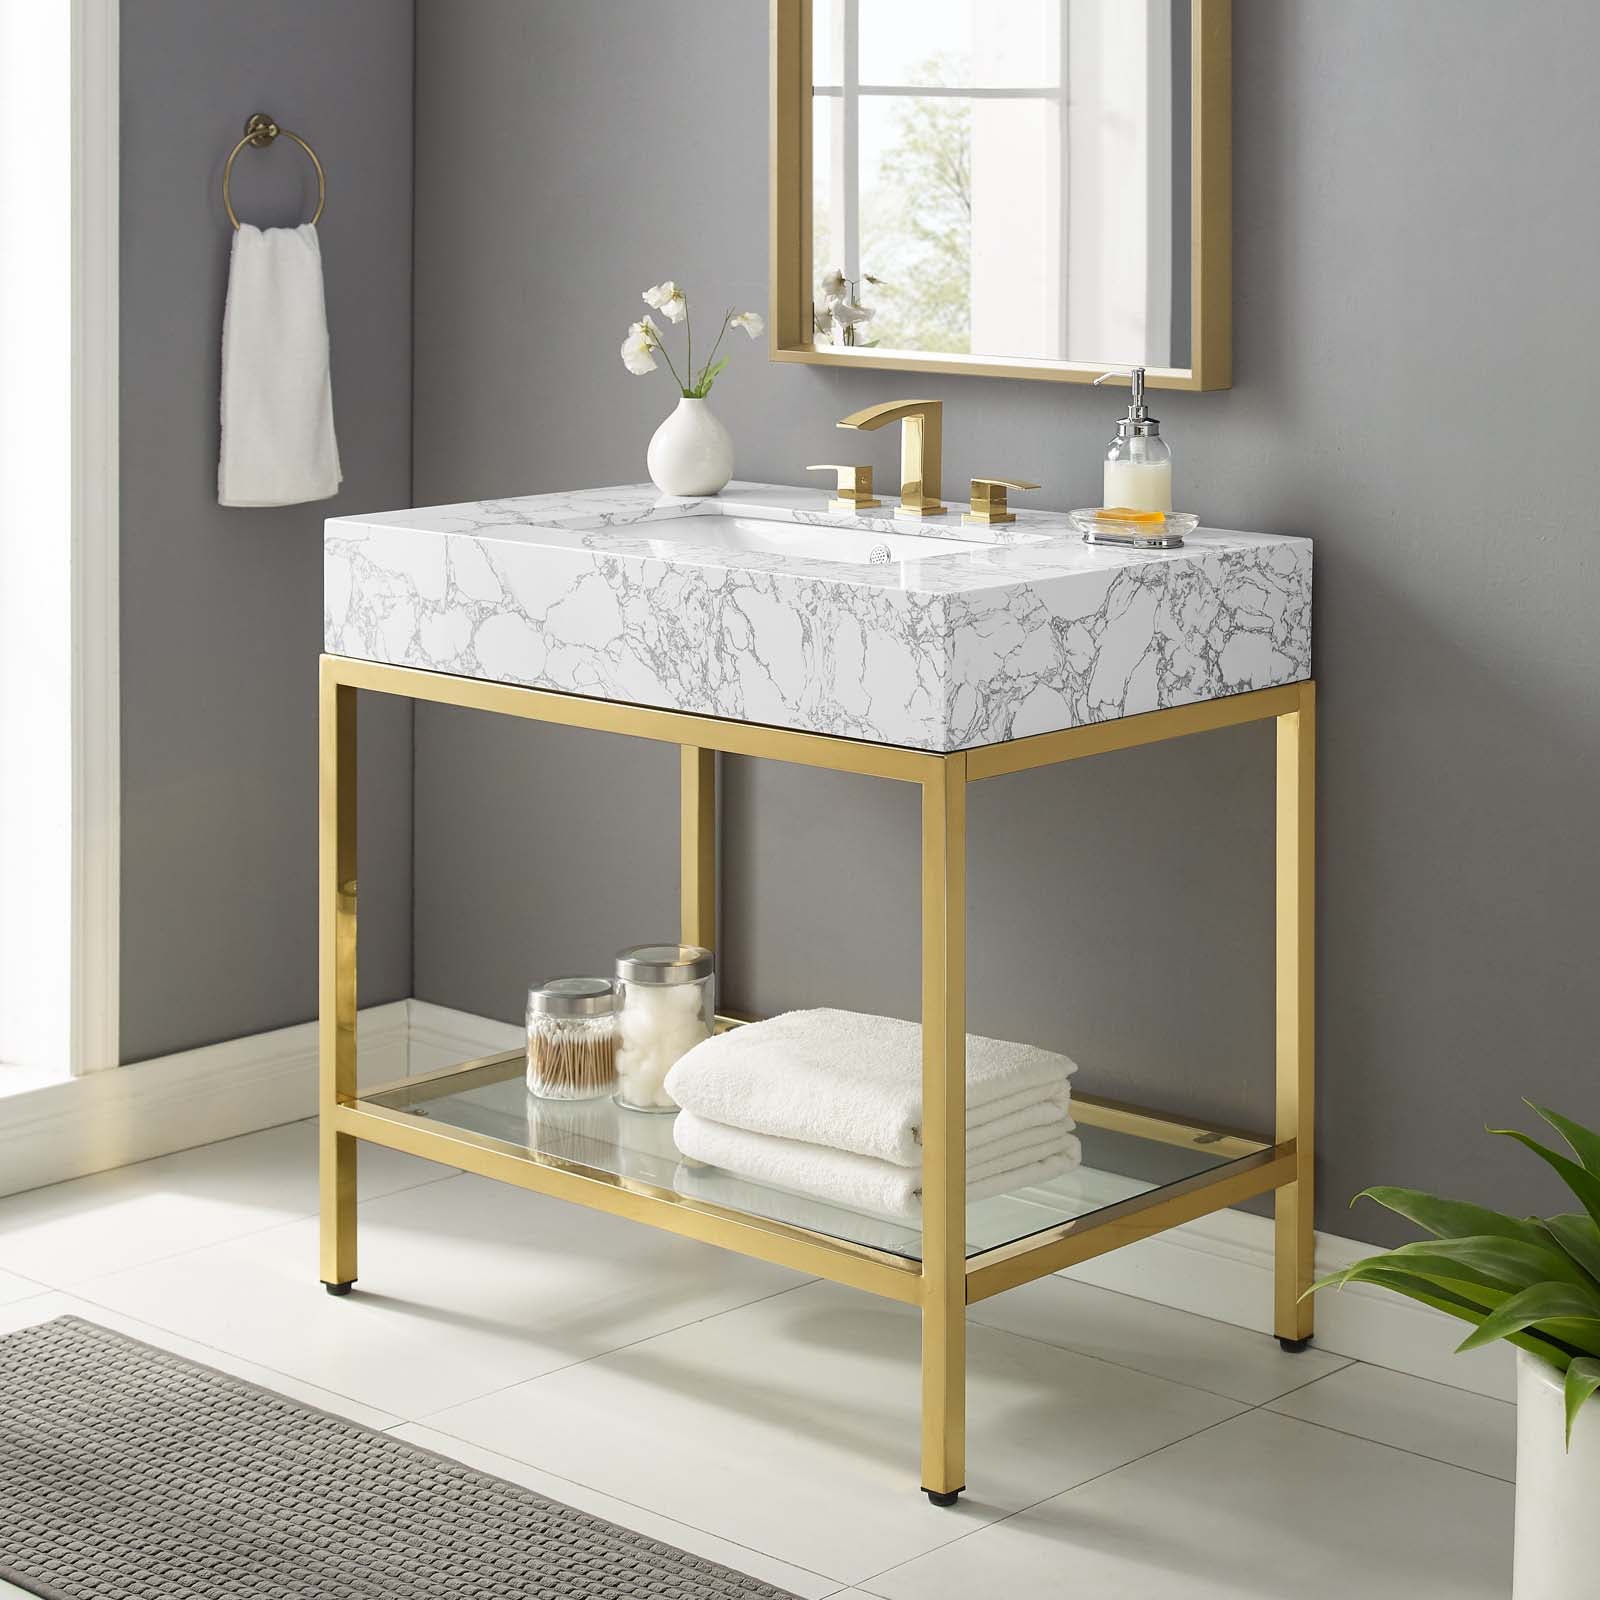 Modway Bathroom Vanity - Kingsley 36" Gold Stainless Steel Bathroom Vanity Gold White